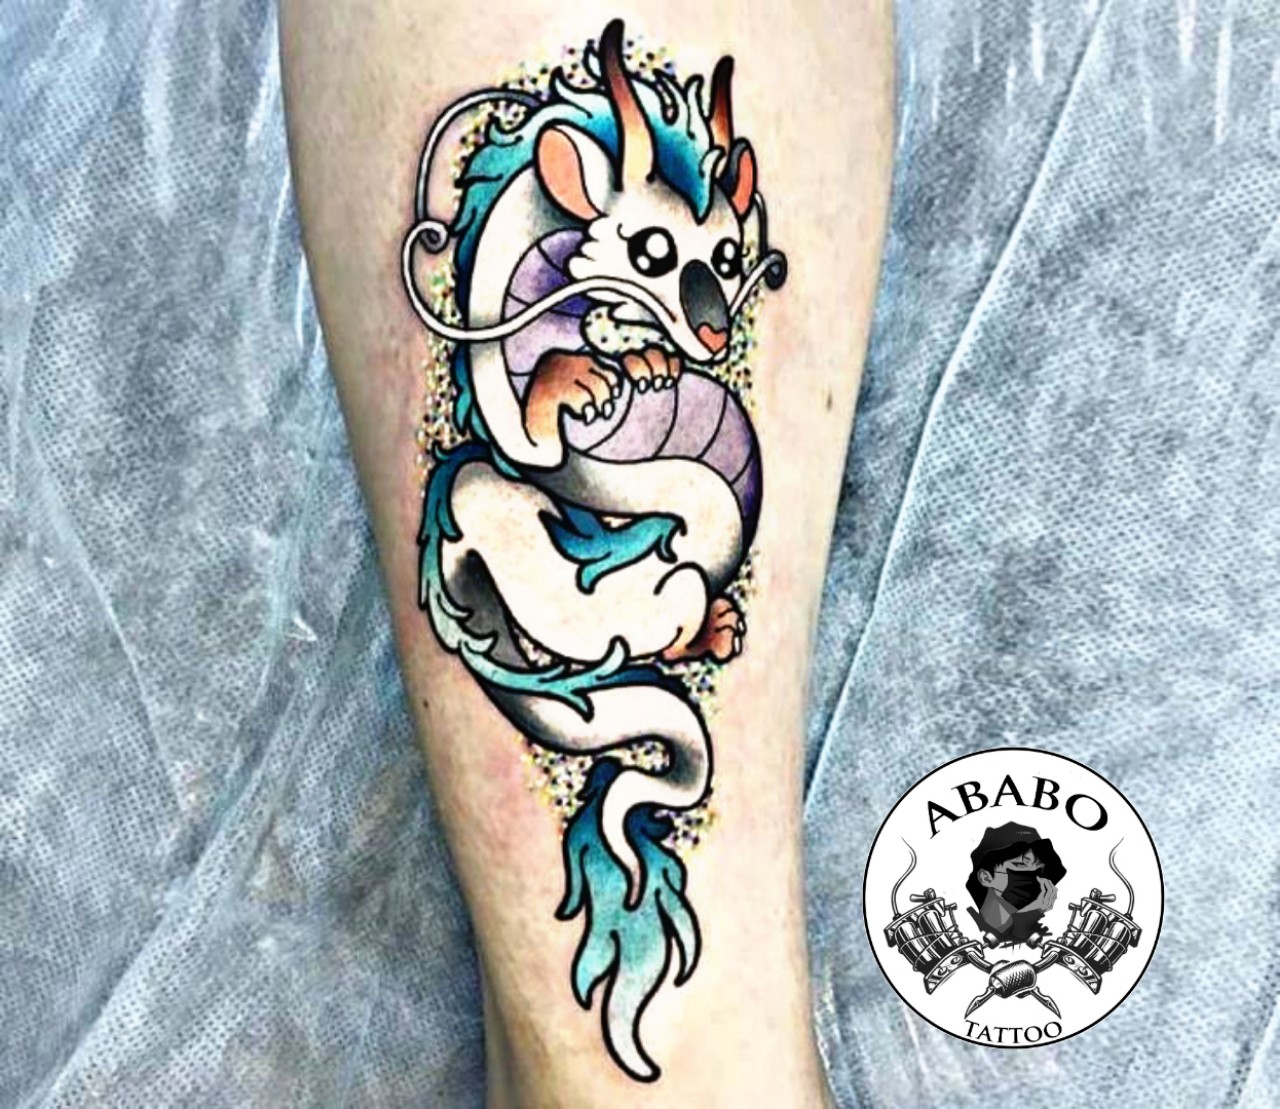  Dragon  Tattoo Dragon Mini  Xăm Hình Nghệ Thuật  Facebook